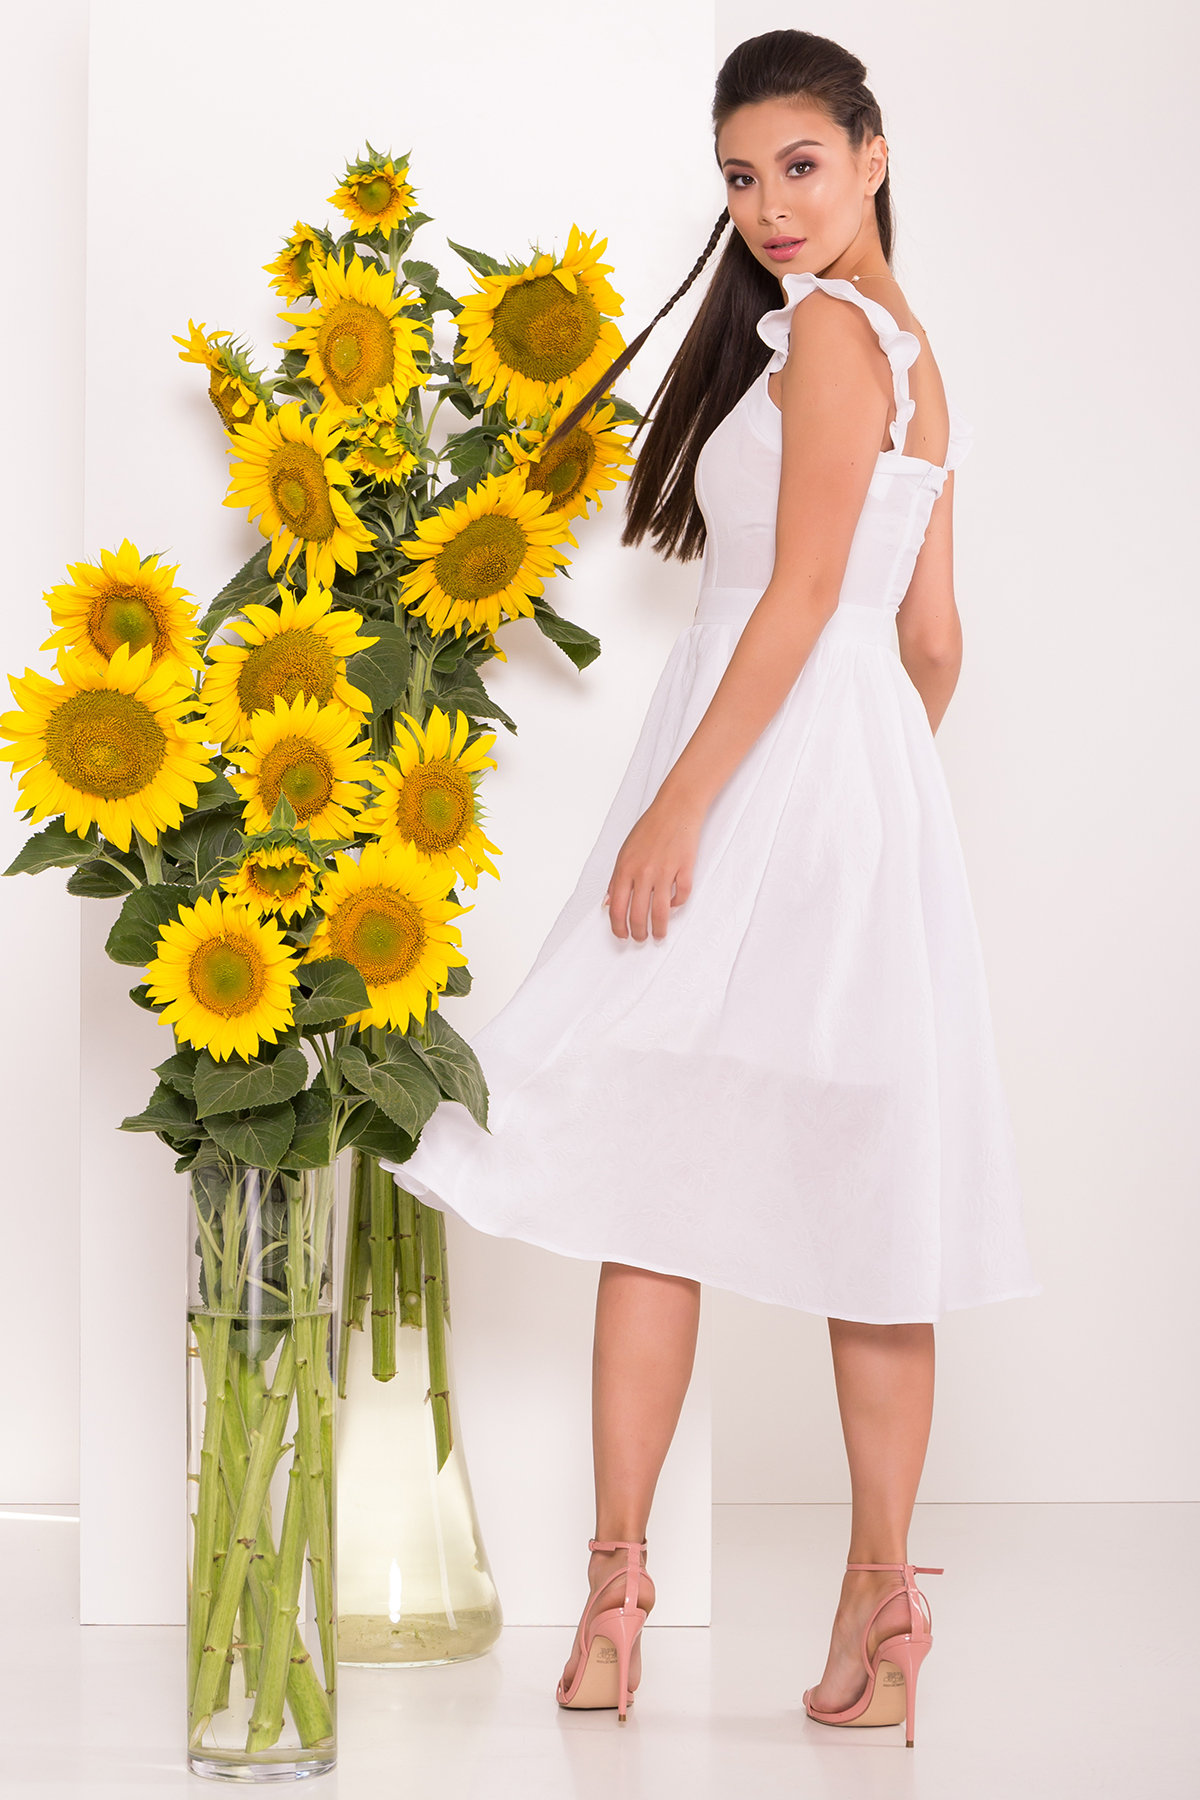 Платье Ундина 7587 АРТ. 43530 Цвет: Белый - фото 2, интернет магазин tm-modus.ru